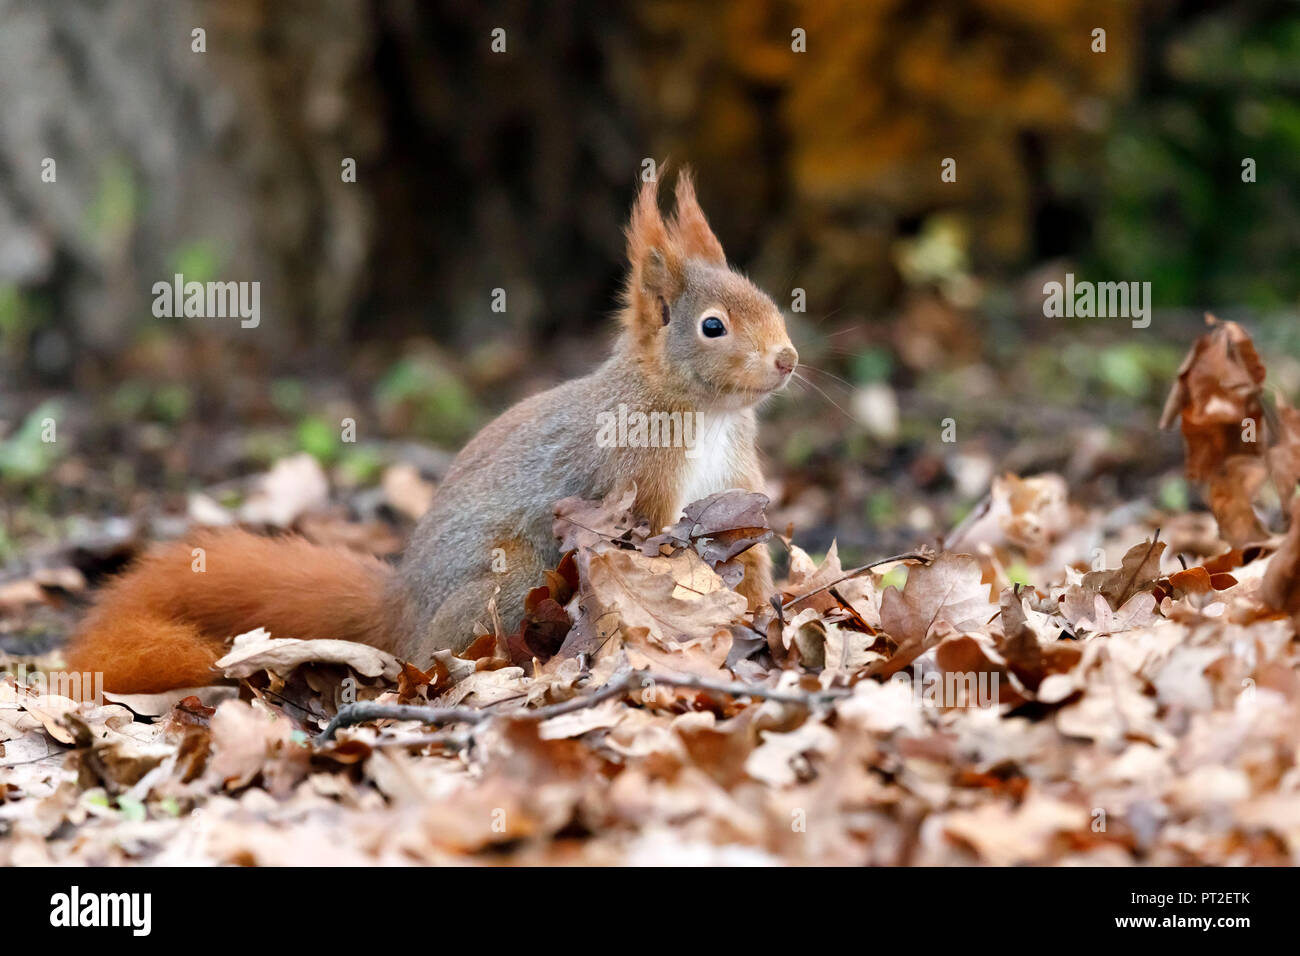 Squirrel, (Sciurus vulgaris), wildlife, Germany Stock Photo